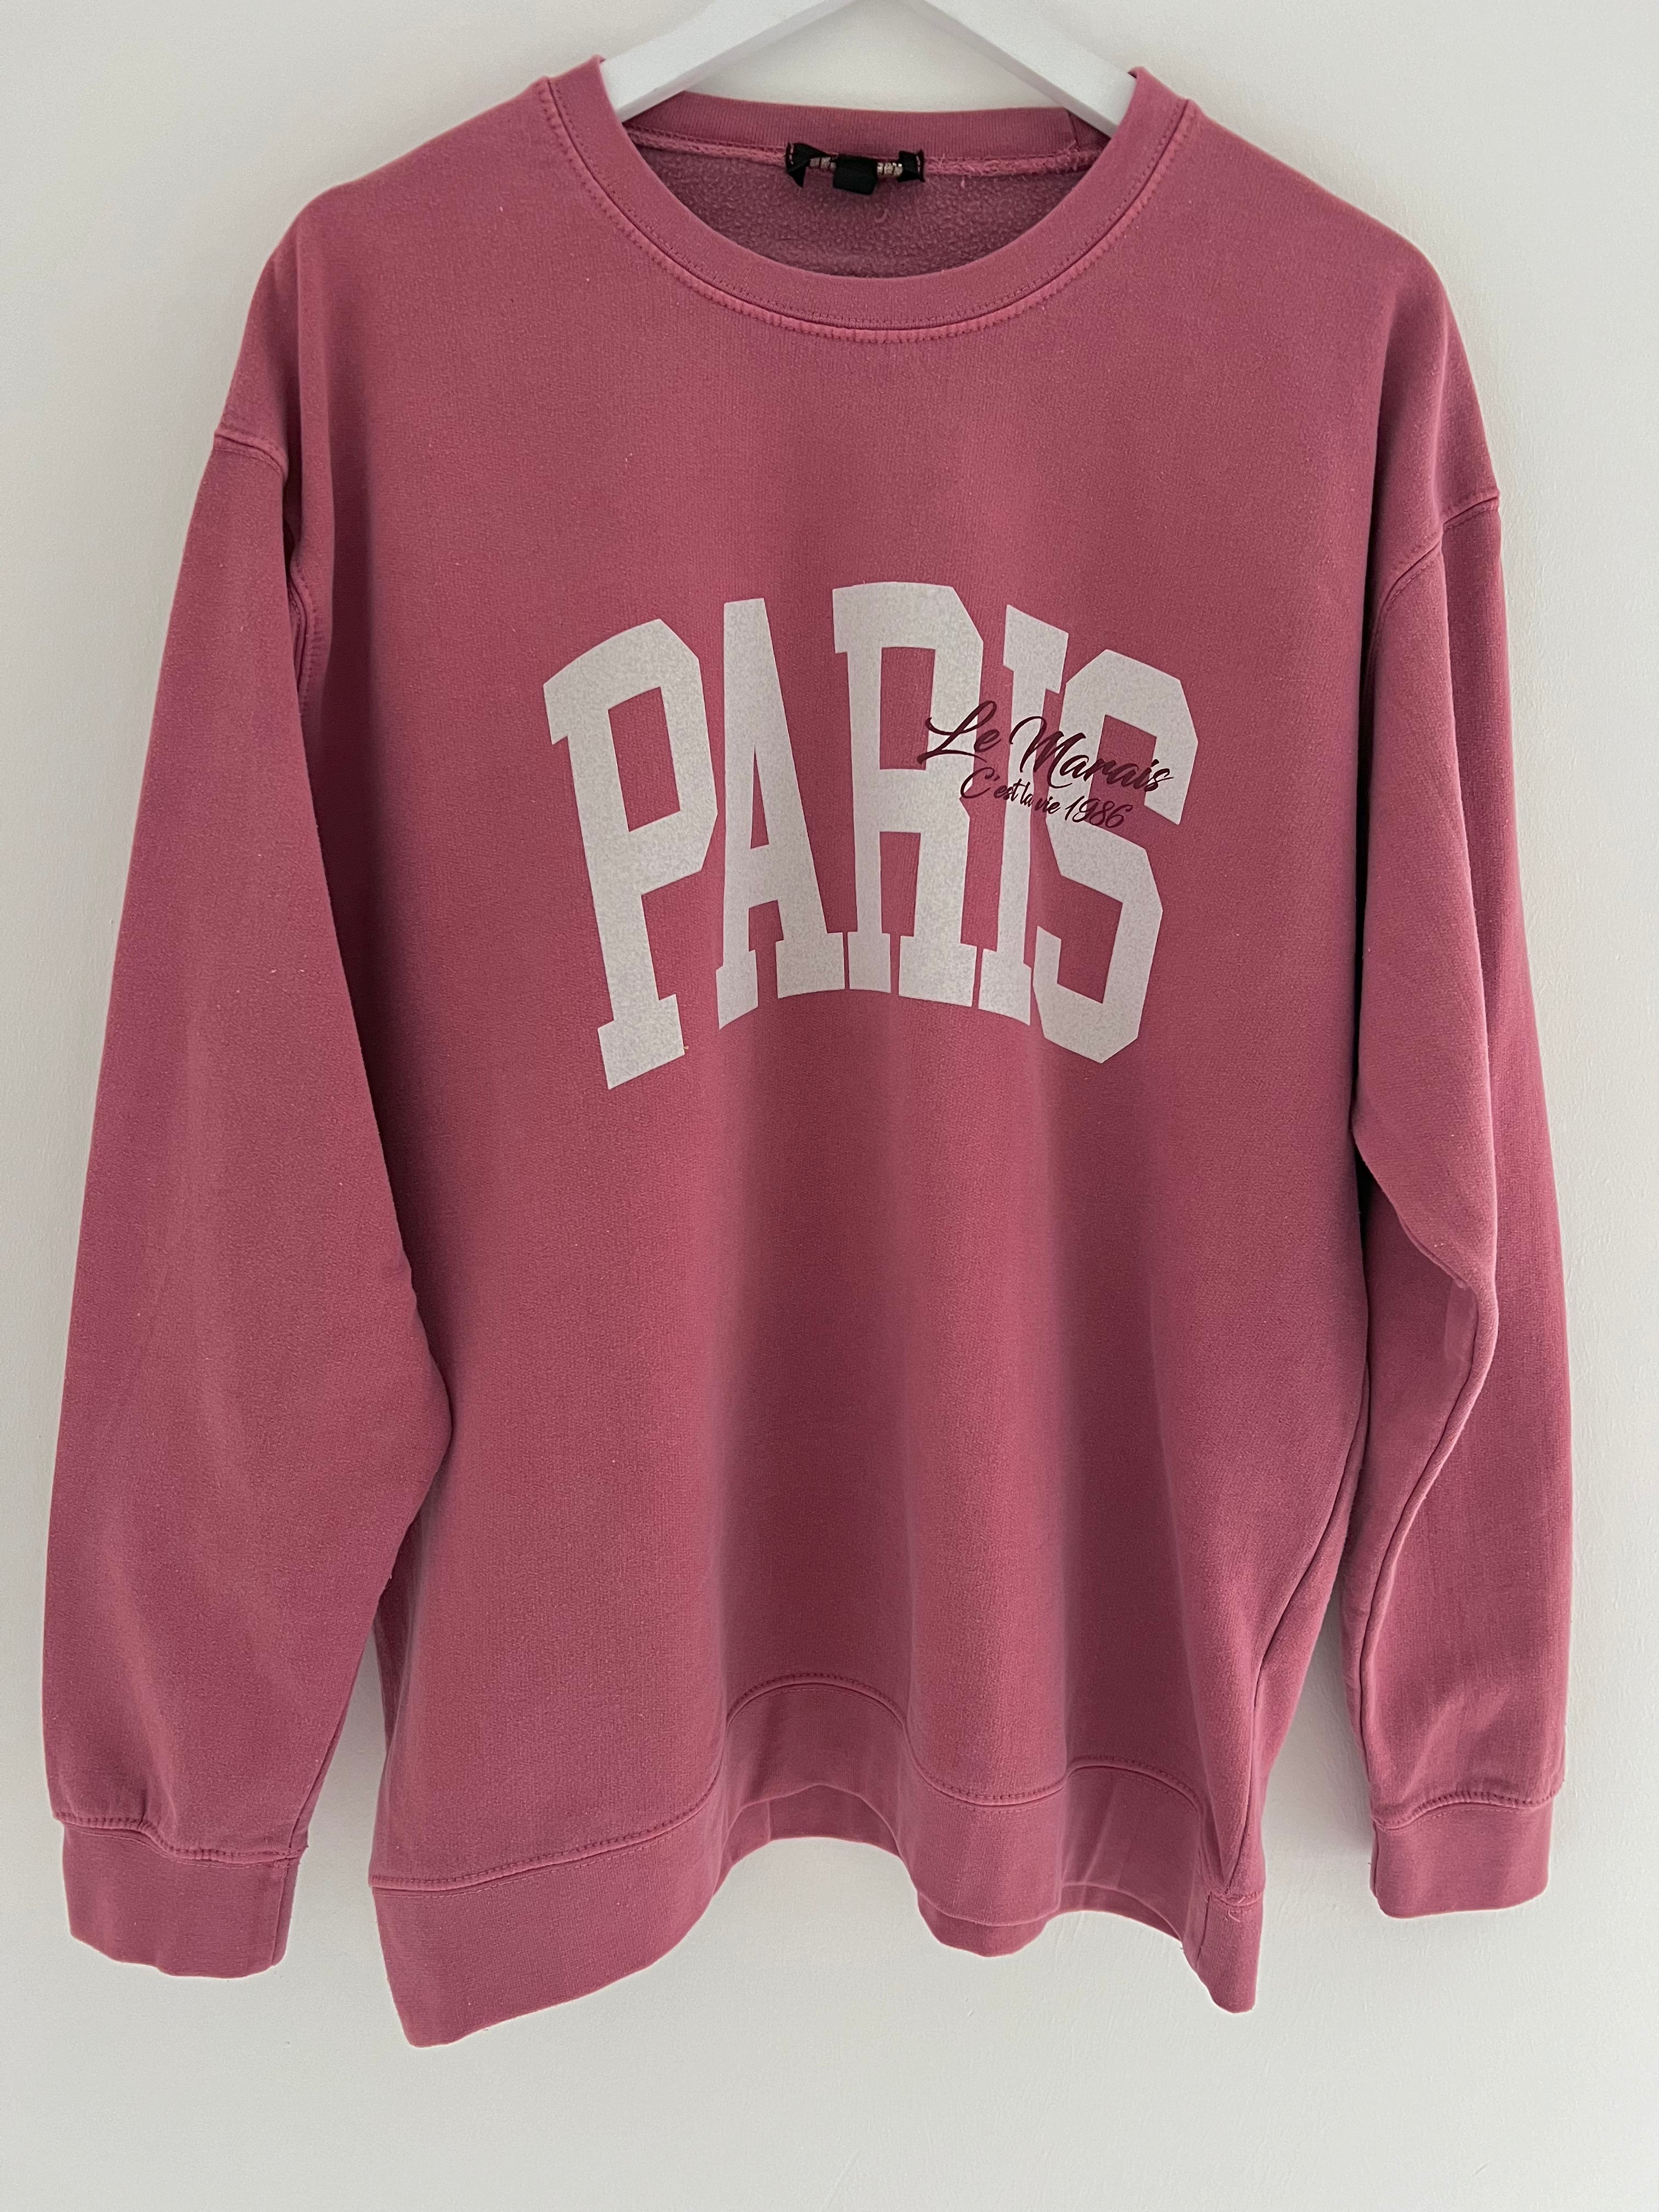 Vintage Wash Paris Sweatshirt in Pinky/Red